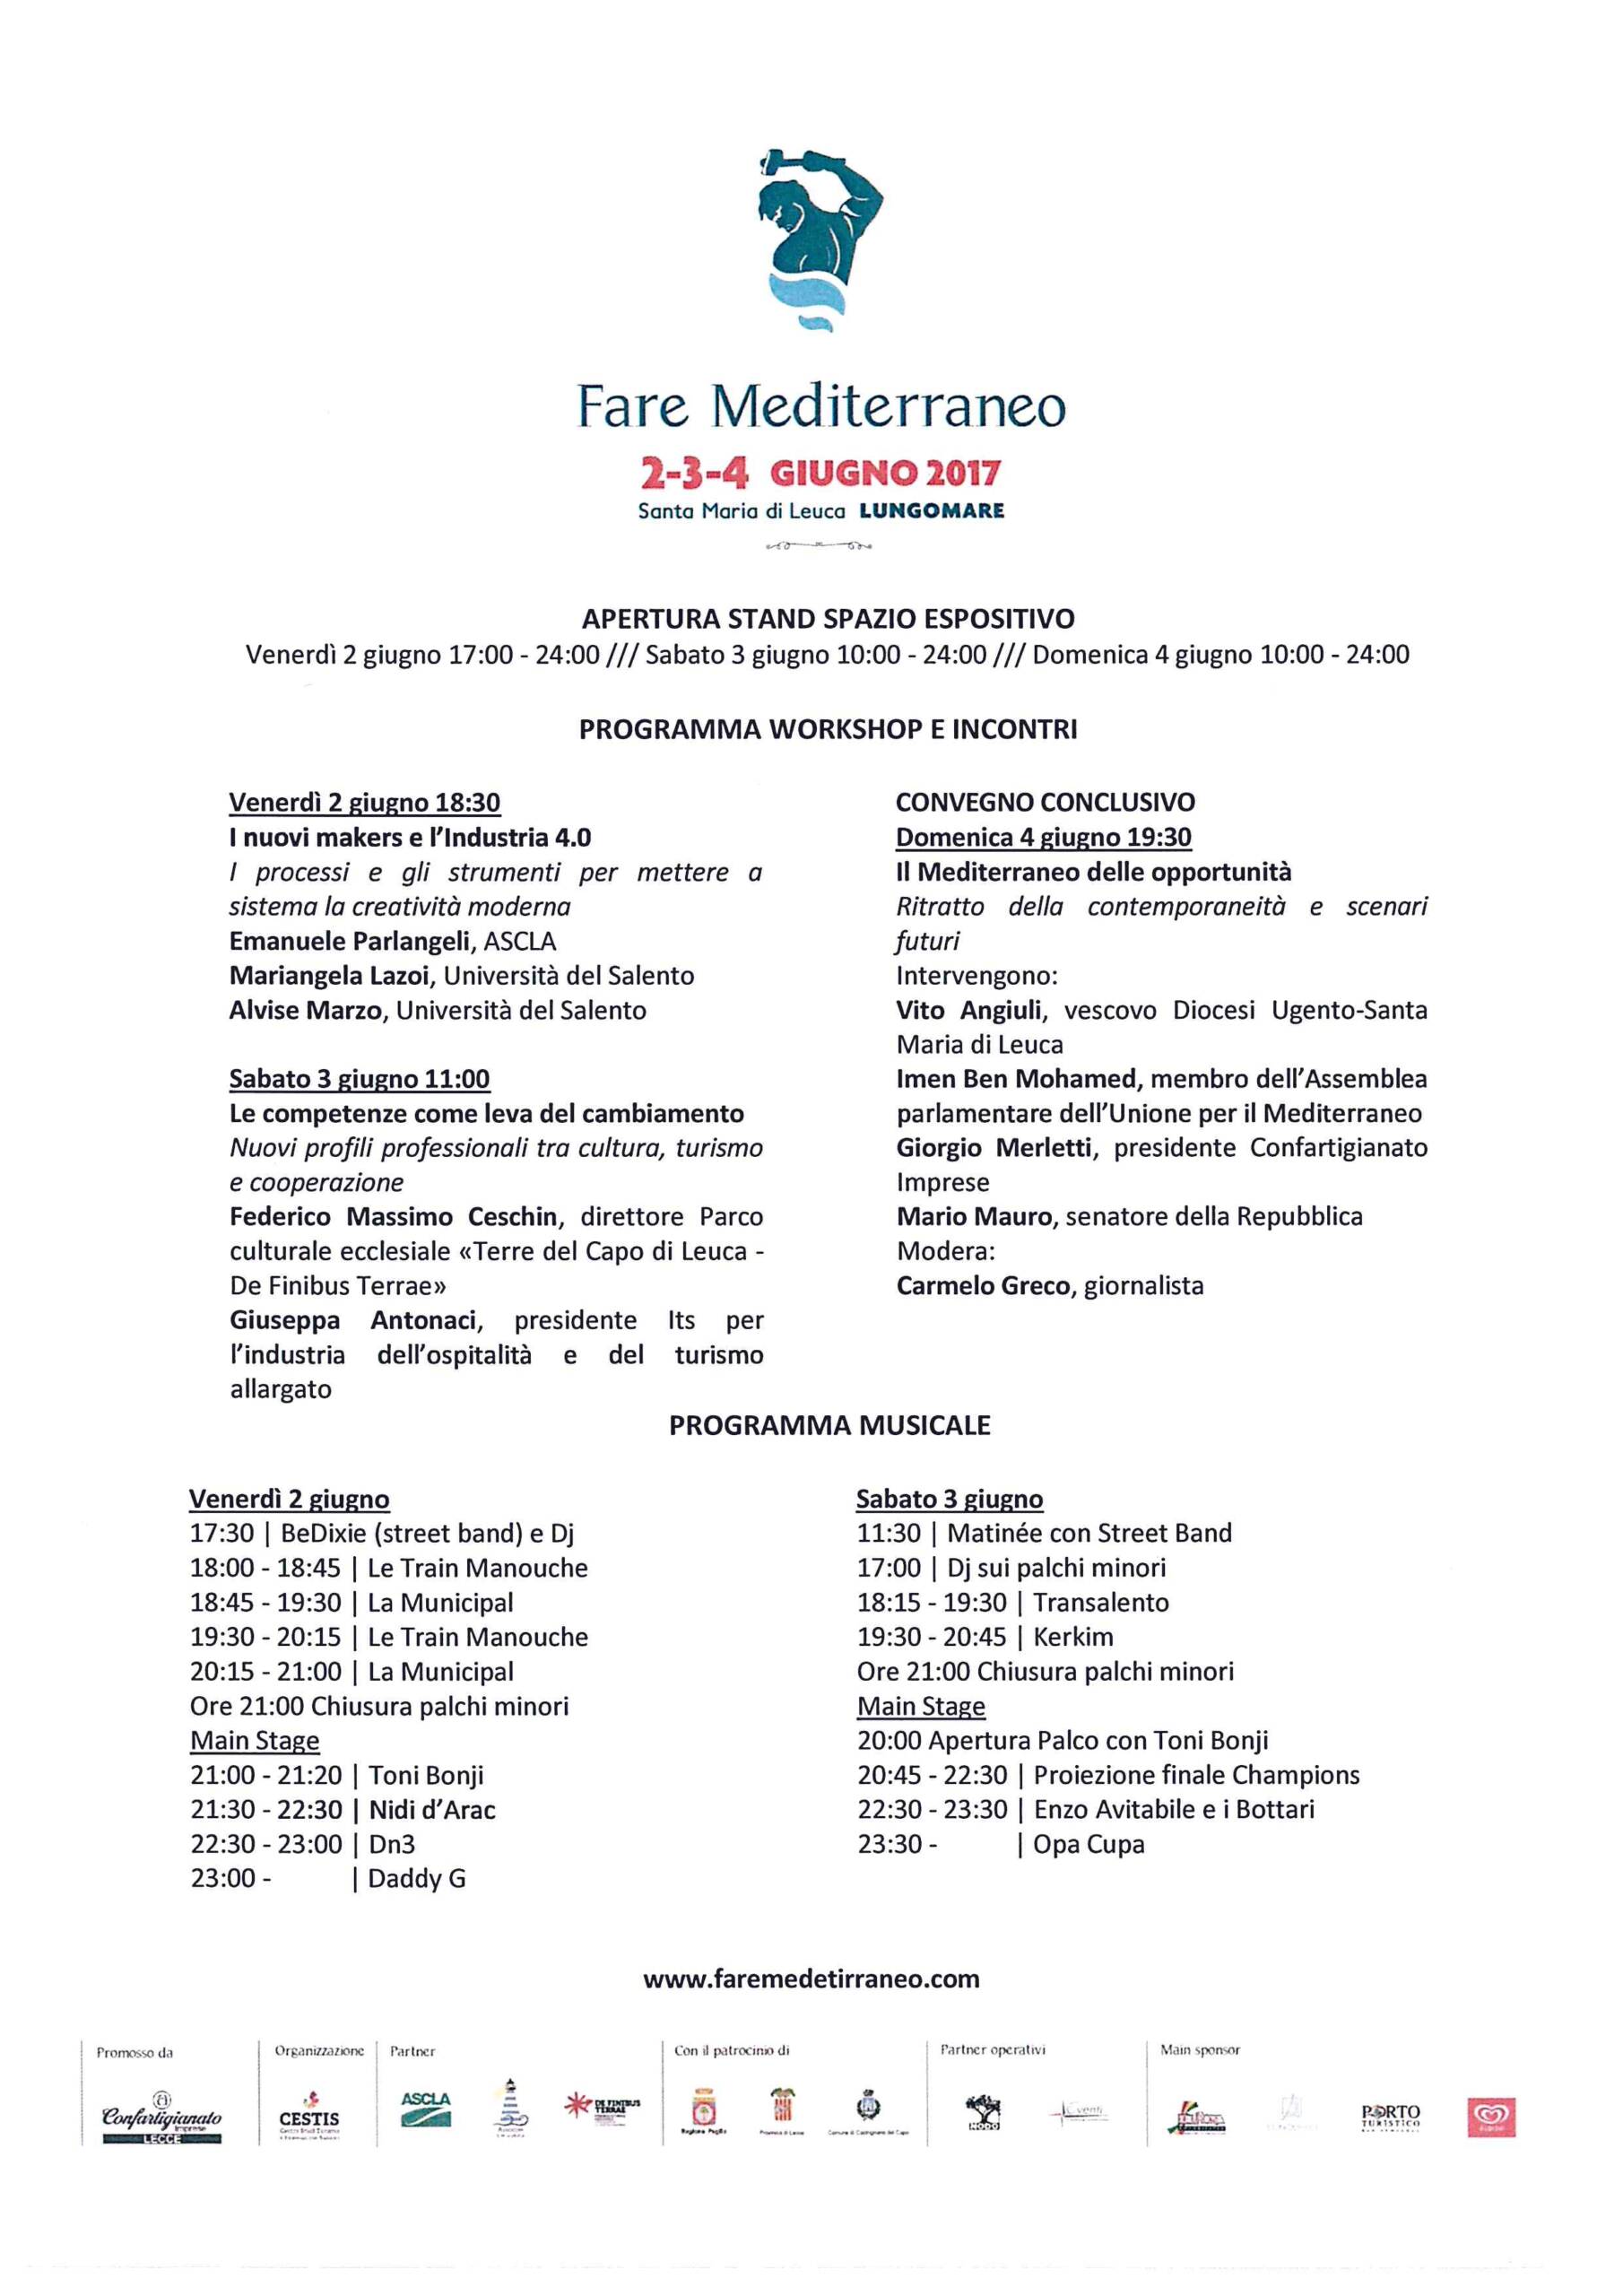 Invito Fare Mediterraneo – Santa Maria di Leuca Lungomare 2-3-4 giugno 2017